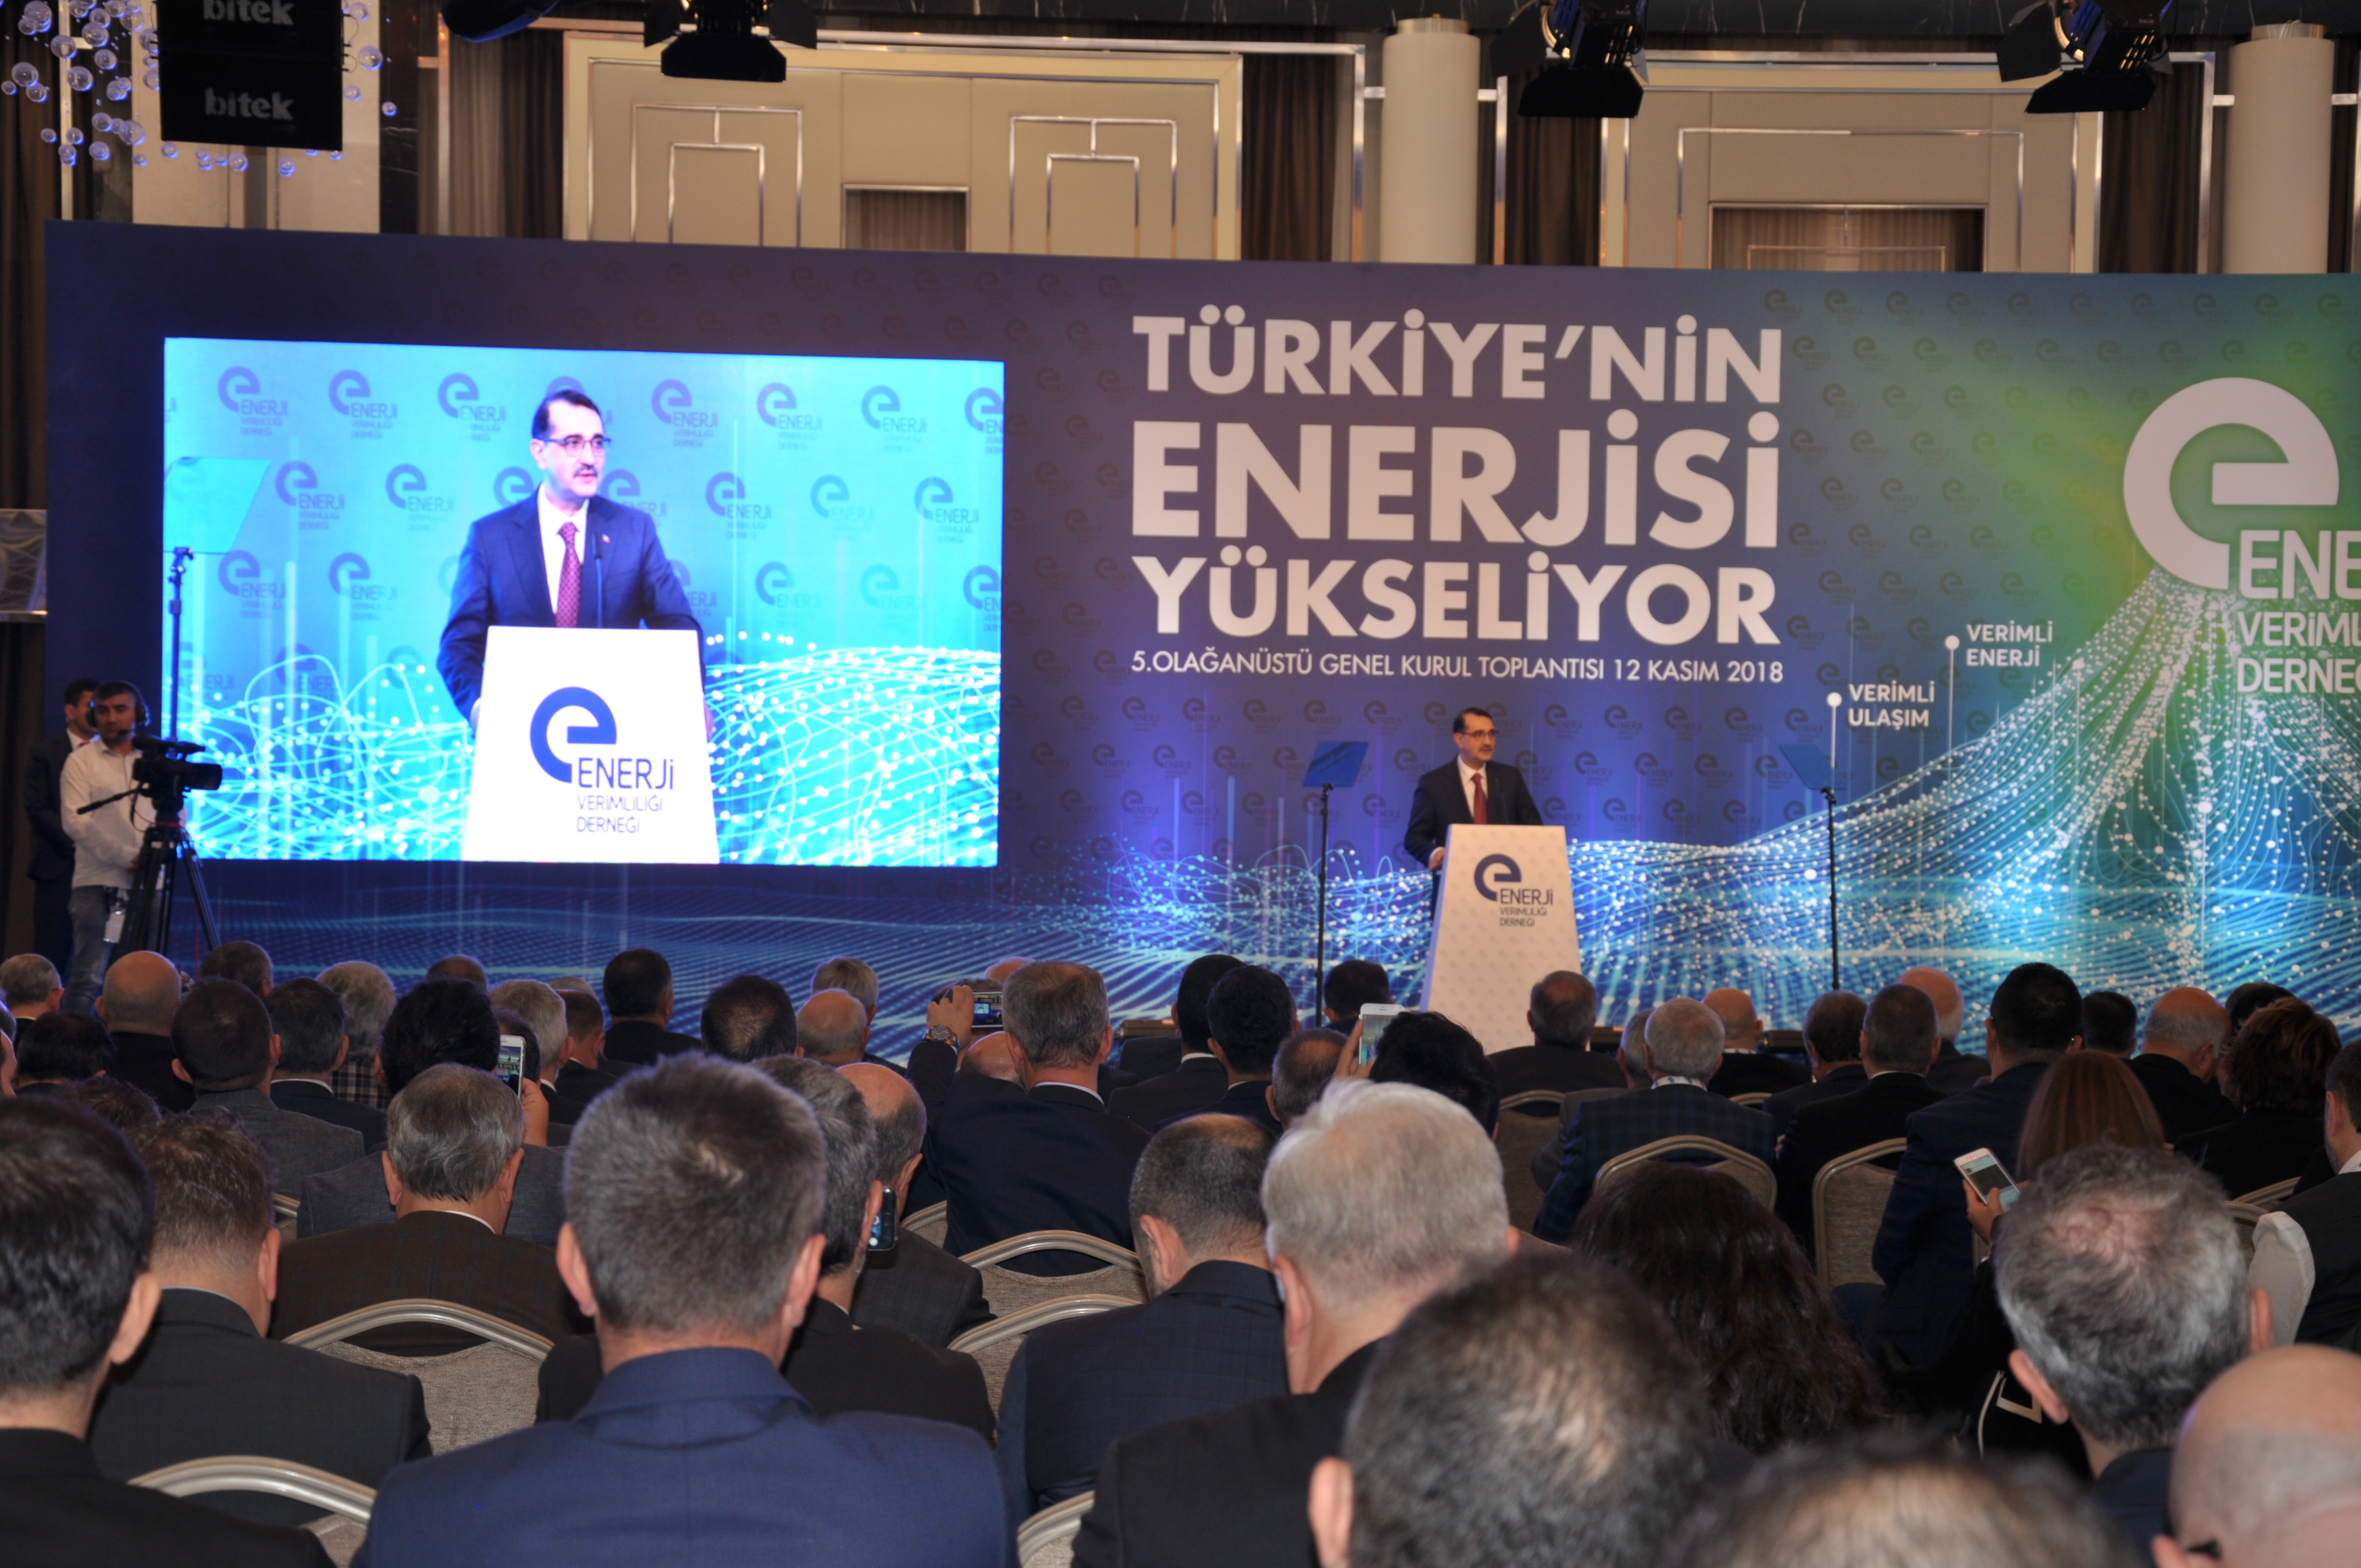 “Türkiye’nin enerji piyasası her geçen gün büyüyor”